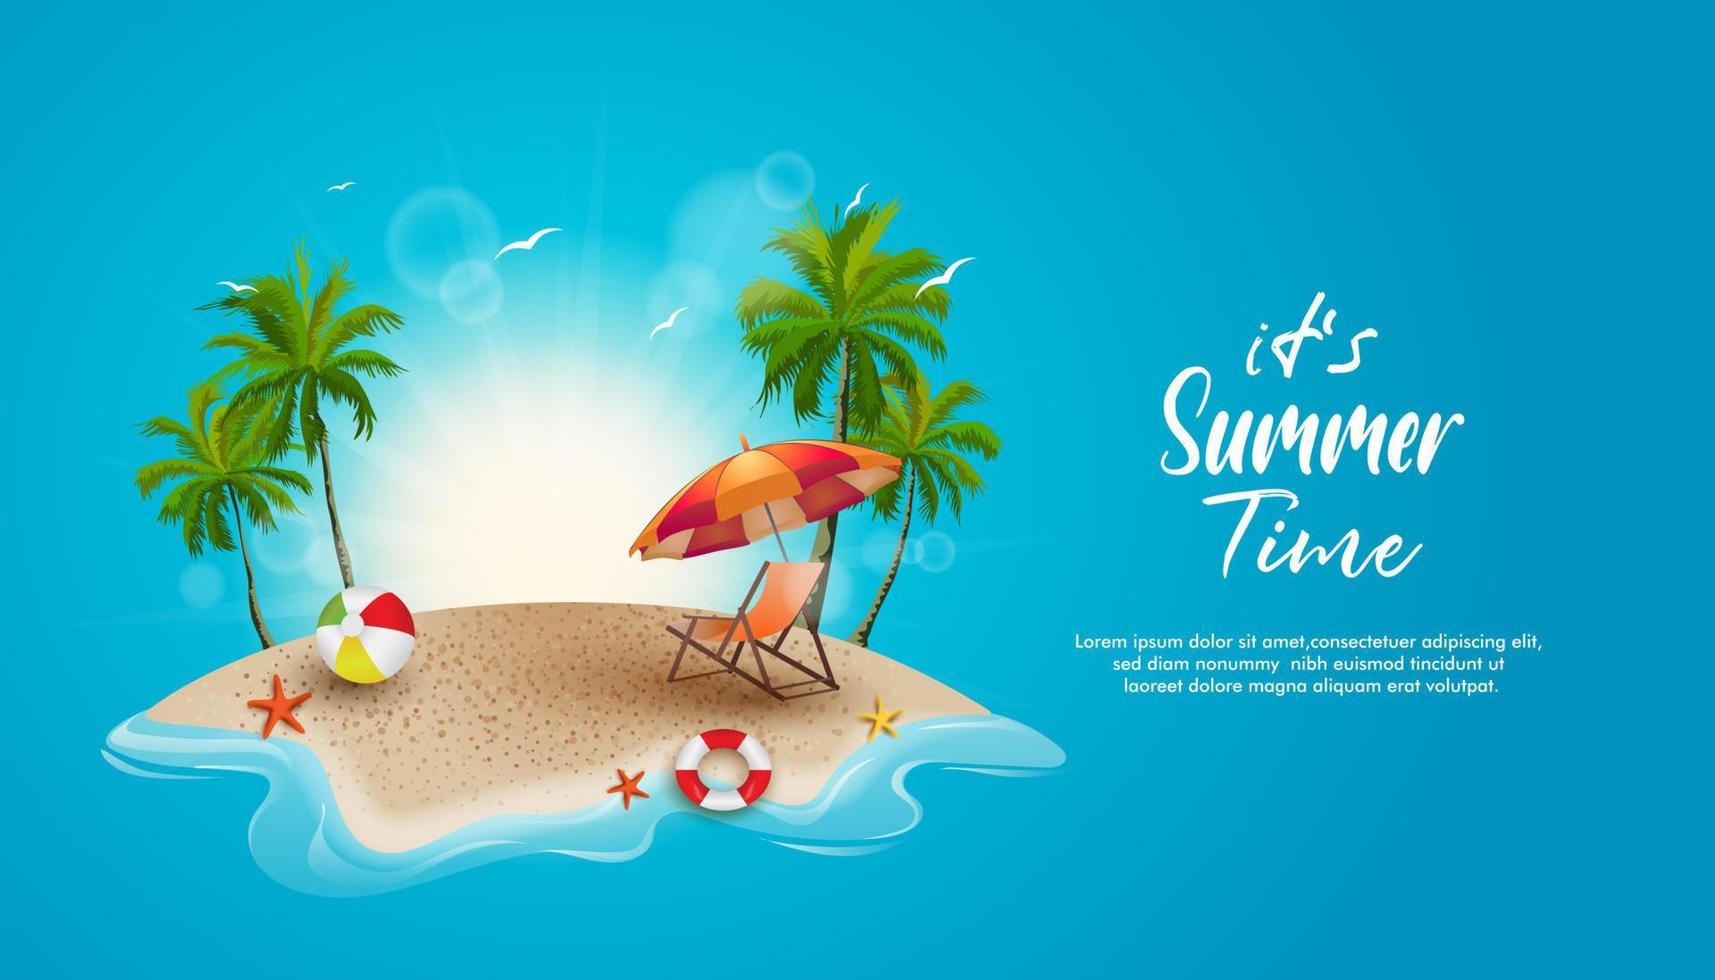 hermoso verano en la playa tropical con cocoteros, sol y elementos decorativos. diseño de verano de fondo con espacio en blanco para texto. vector